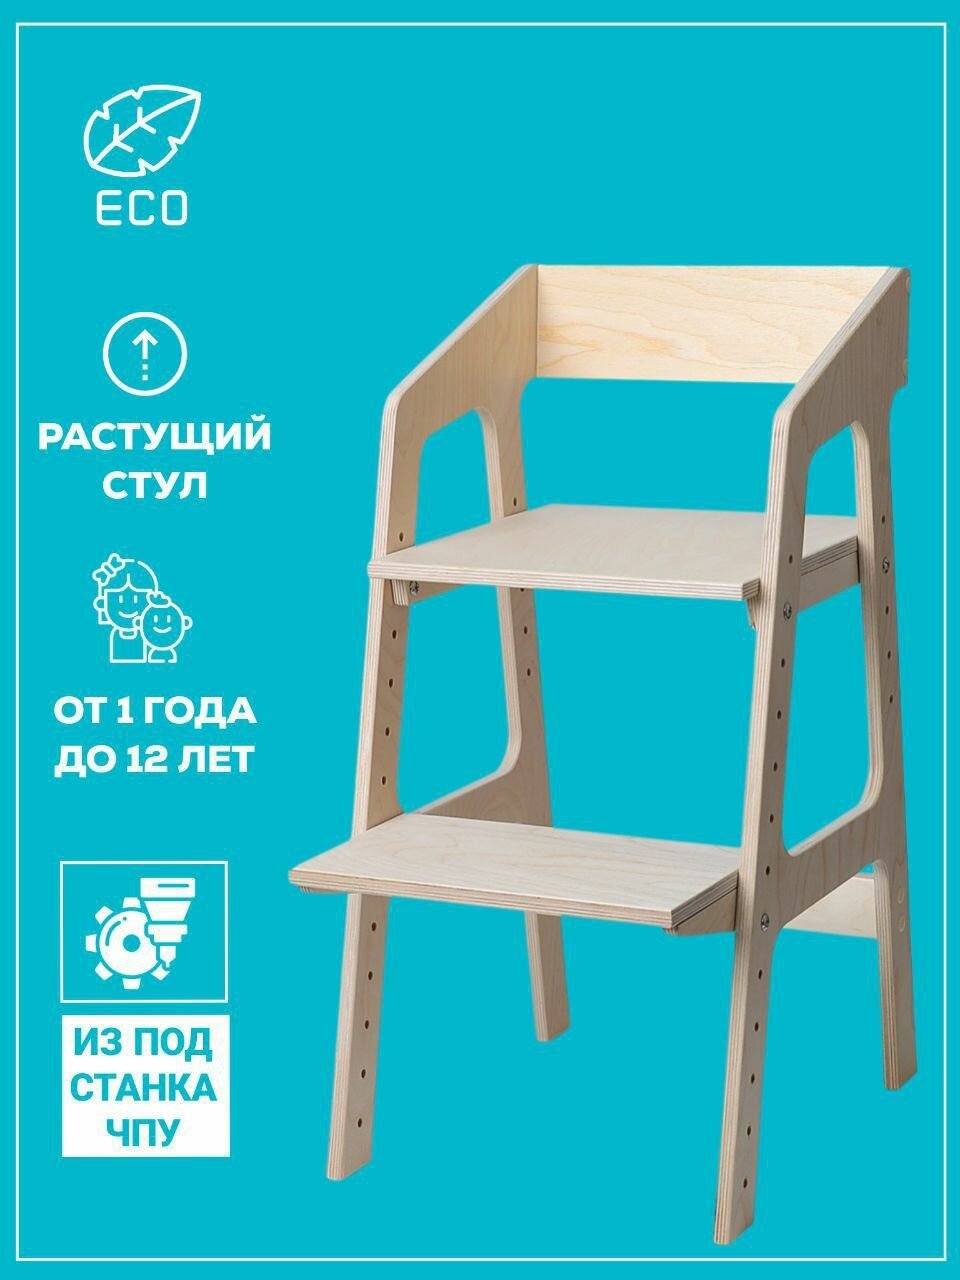 Растущий стул ALPIKA-BRAND ECO materials Egoza, со станка ЧПУ